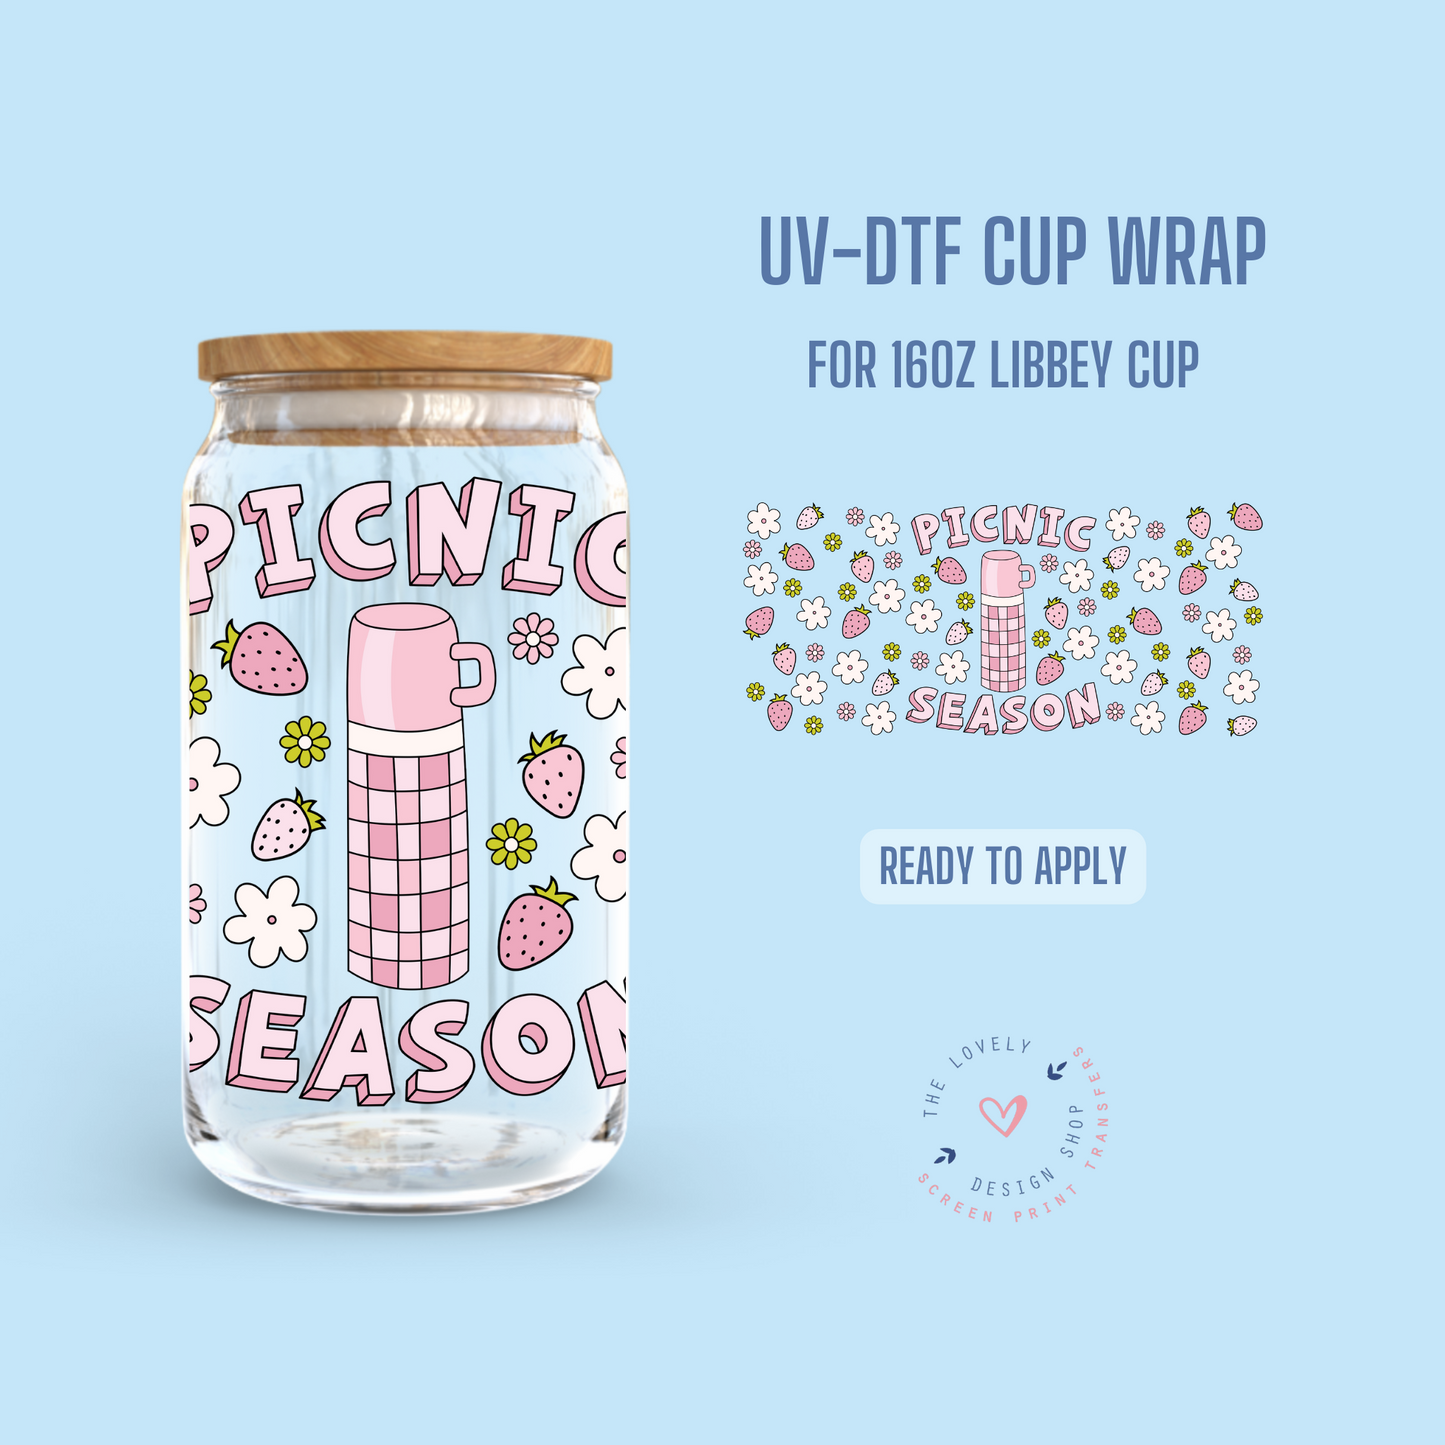 Picnic Season - UV DTF 16 oz Libbey Cup Wrap (Ready to Ship) Apr 17